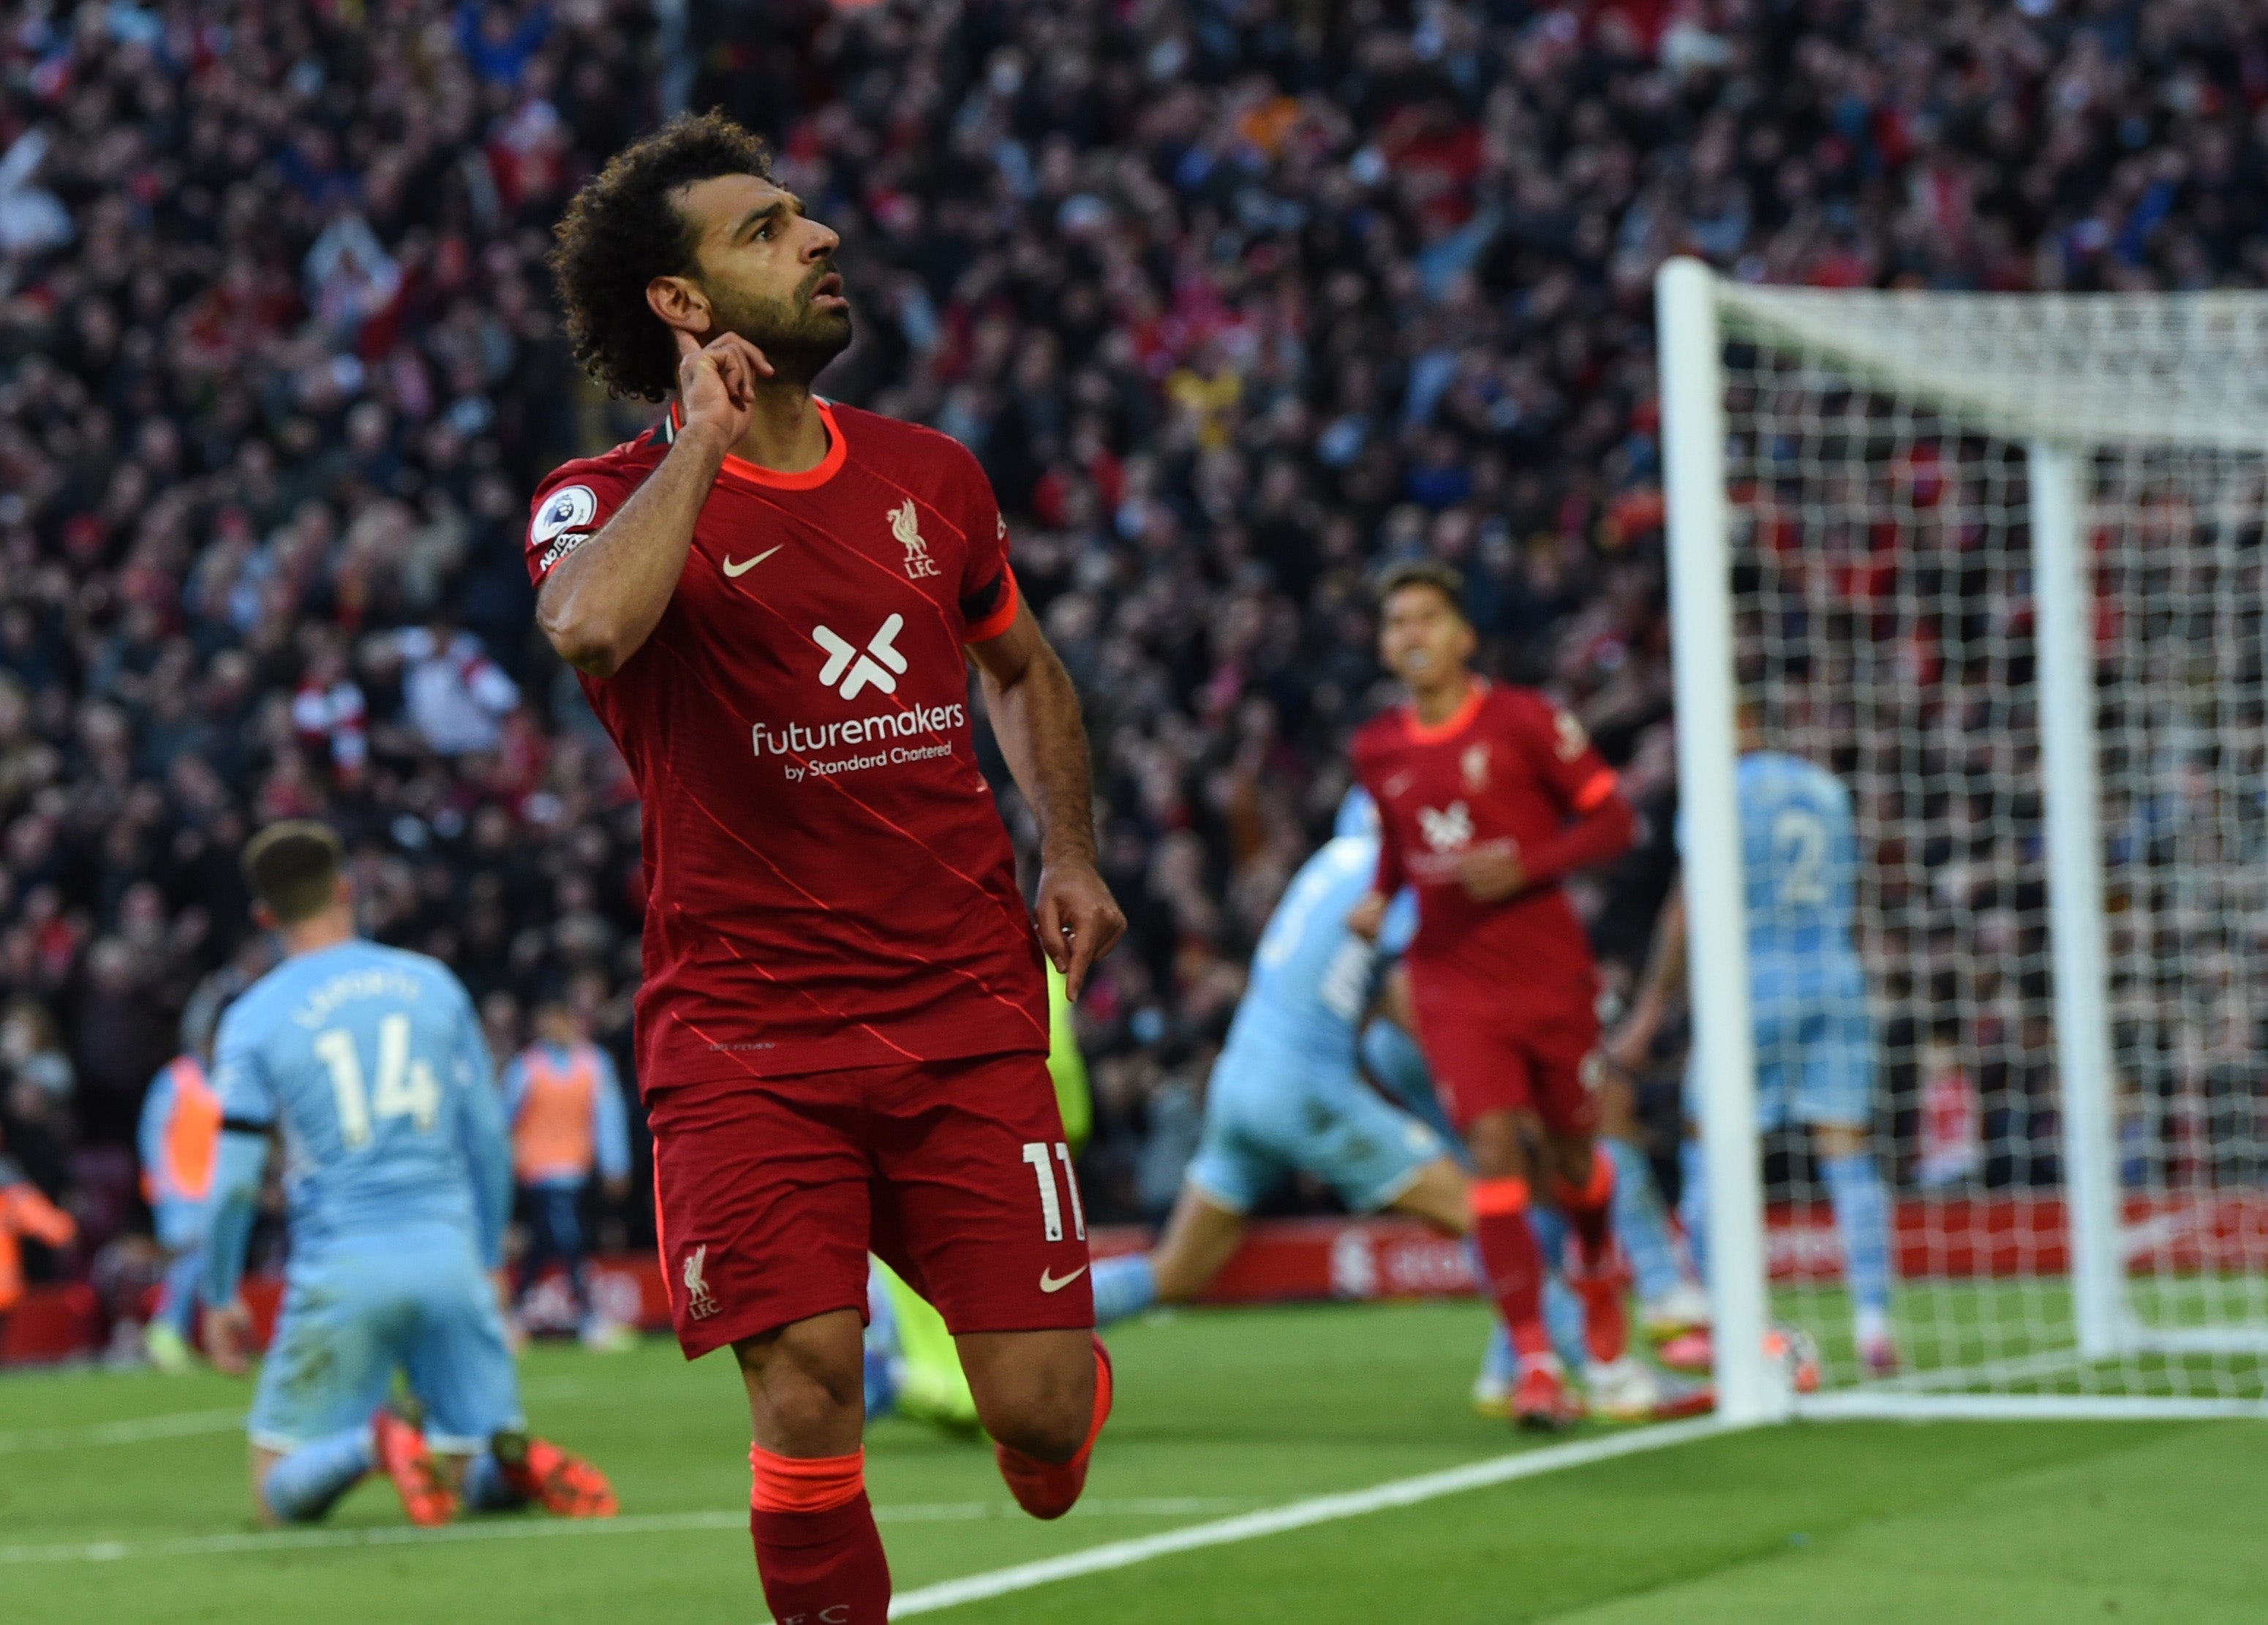 Mohamed Salah celebrates after scoring Liverpool’s equaliser